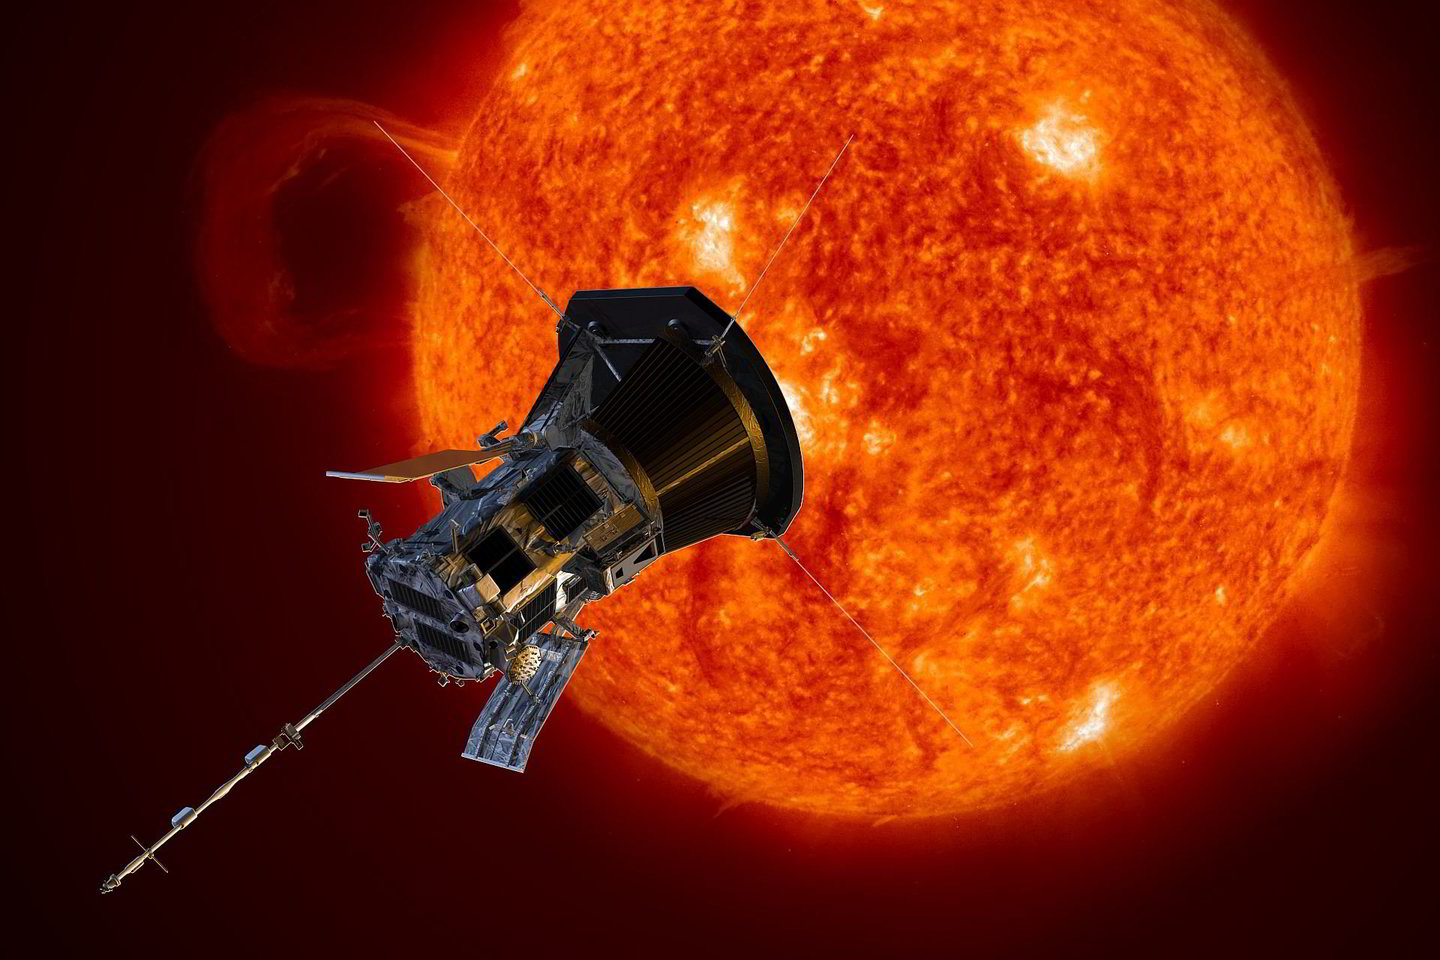 Pusantro milijardo vertės misija bus pirmoji, kuri „palies“ Saulę – zondas įskries į Saulės atmosferą. Tai bus skrydis, kuris priartės prie mūsų žvaigždės septynis kartus arčiau, nei tai buvo padaryta iki šiol.<br> NASA iliustr.